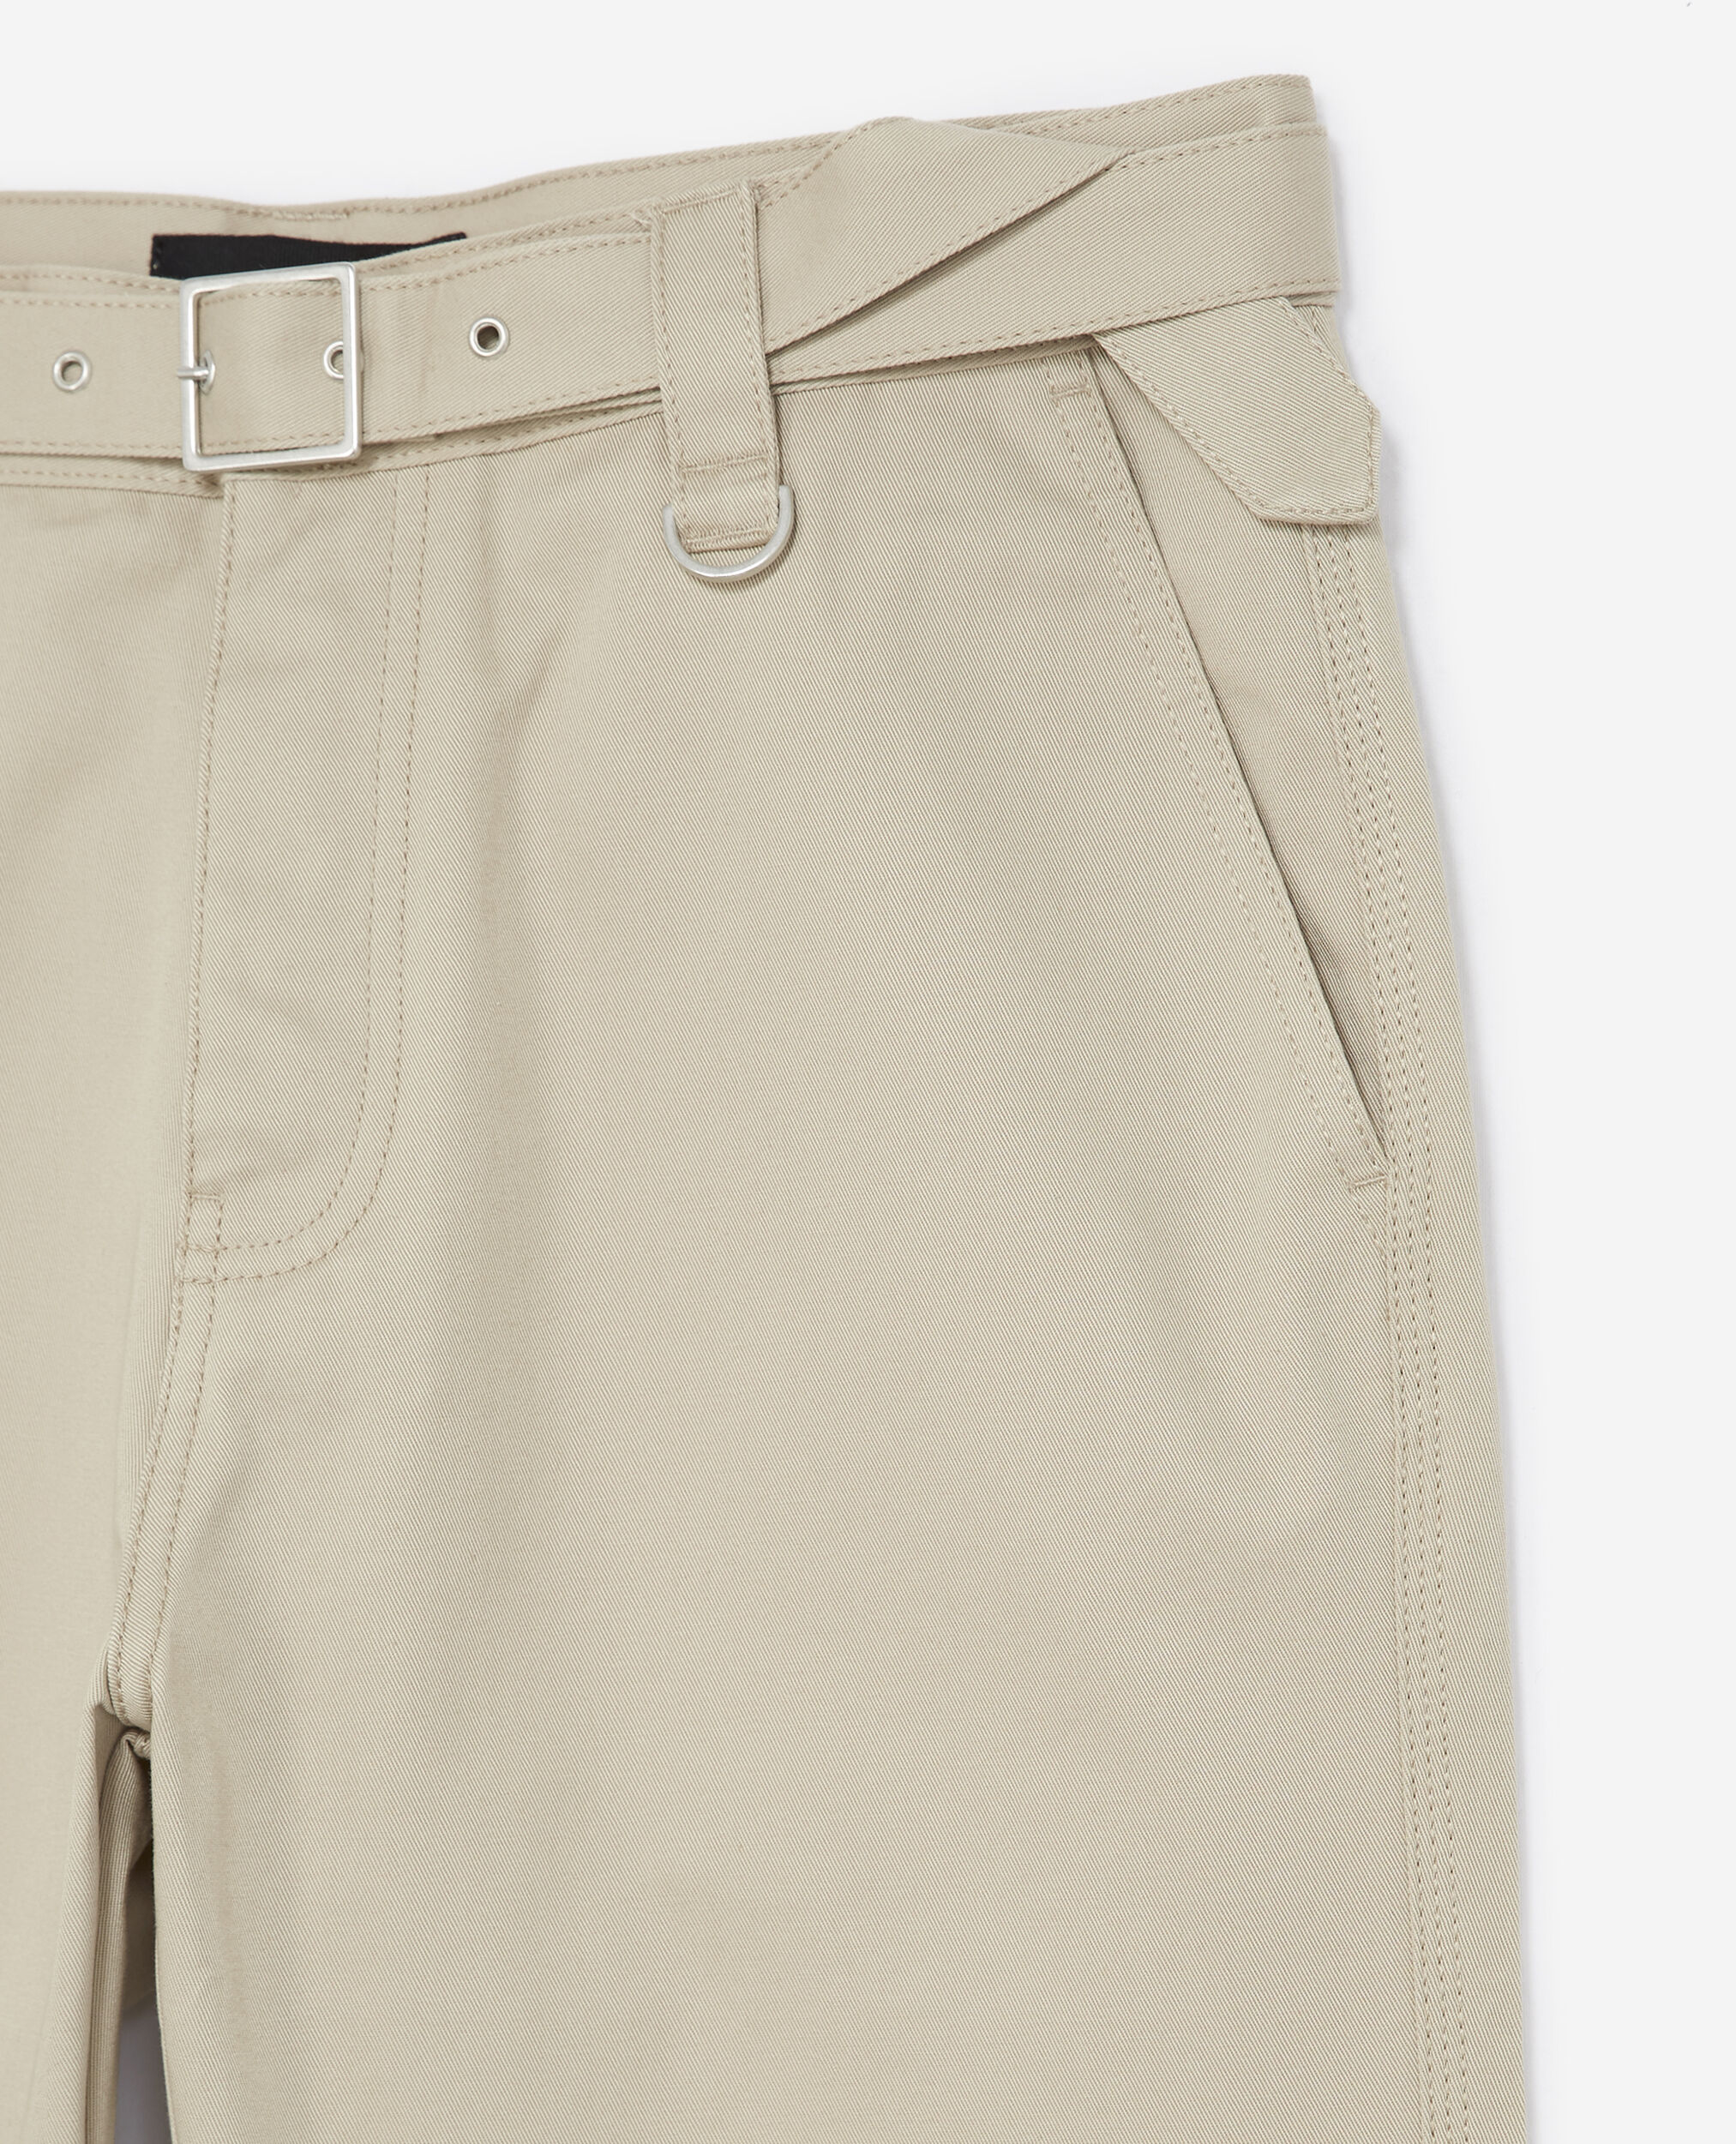 Pantalon coton beige à ceinture intégrée, BEIGE, hi-res image number null